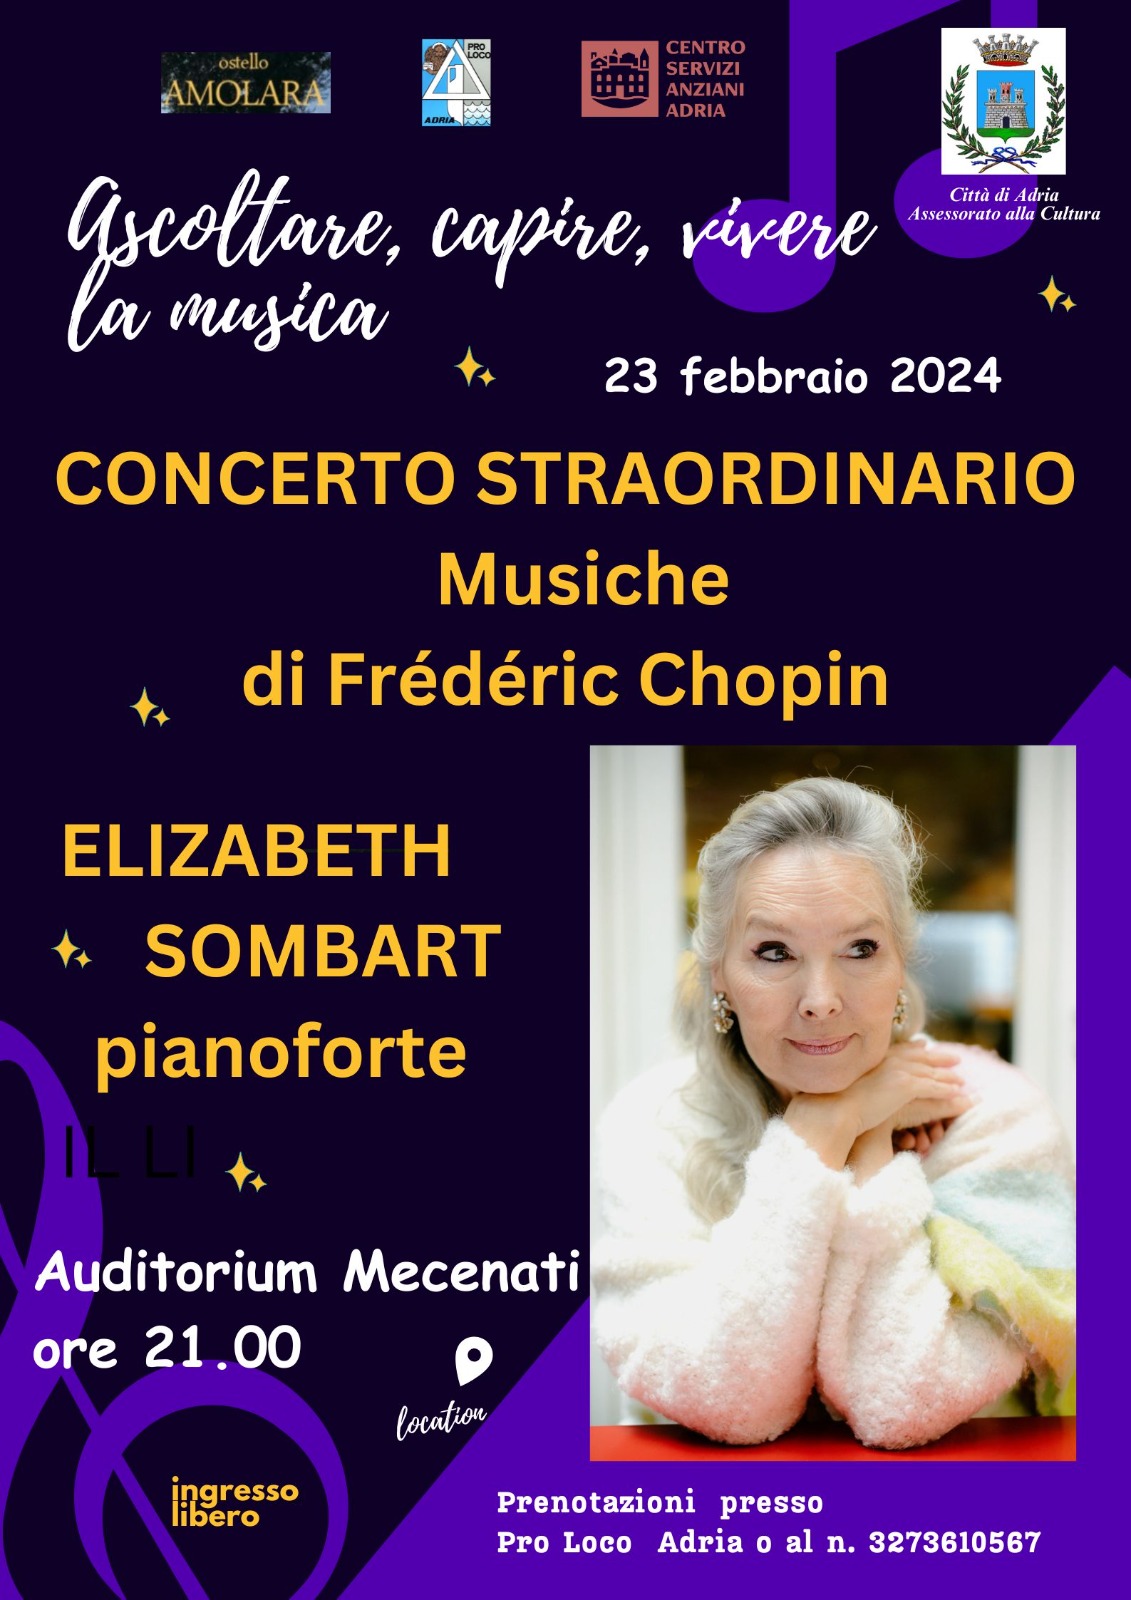 Concert Chopin - nocturnes interprétés par Elizabeth Sombart